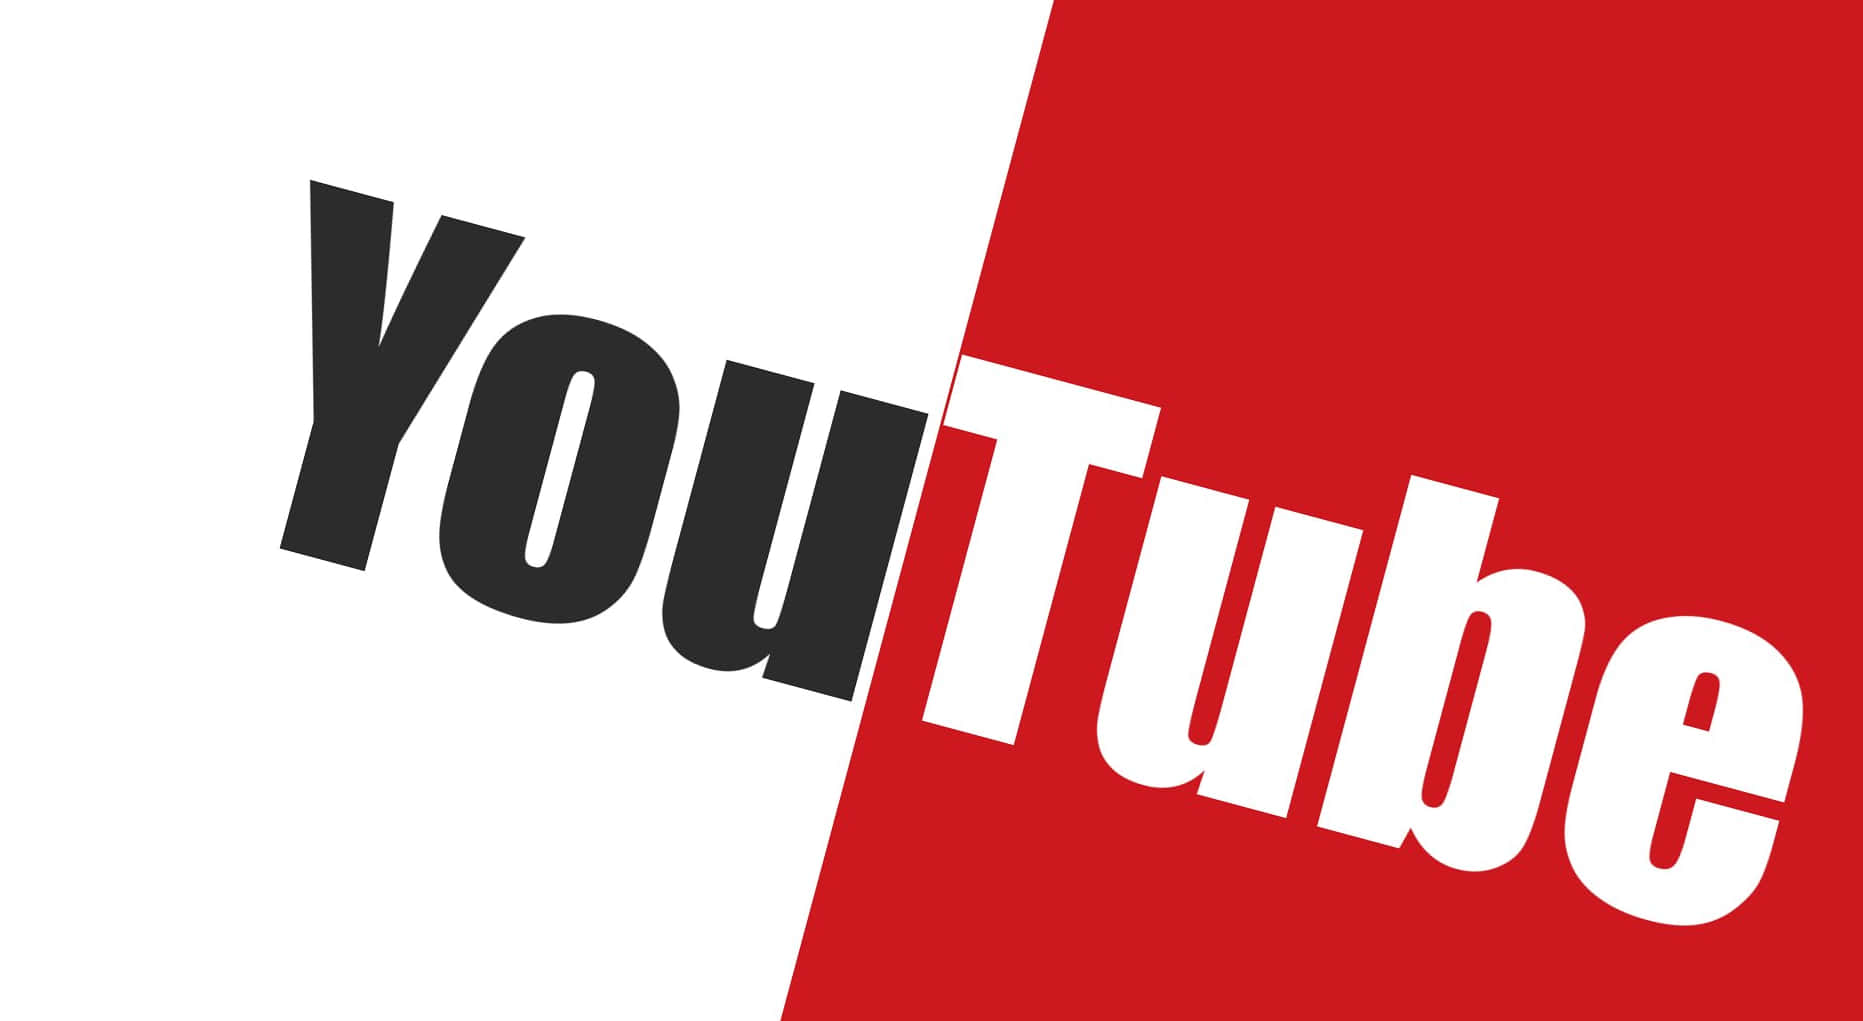 Logodi Youtube Su Sfondo Nero